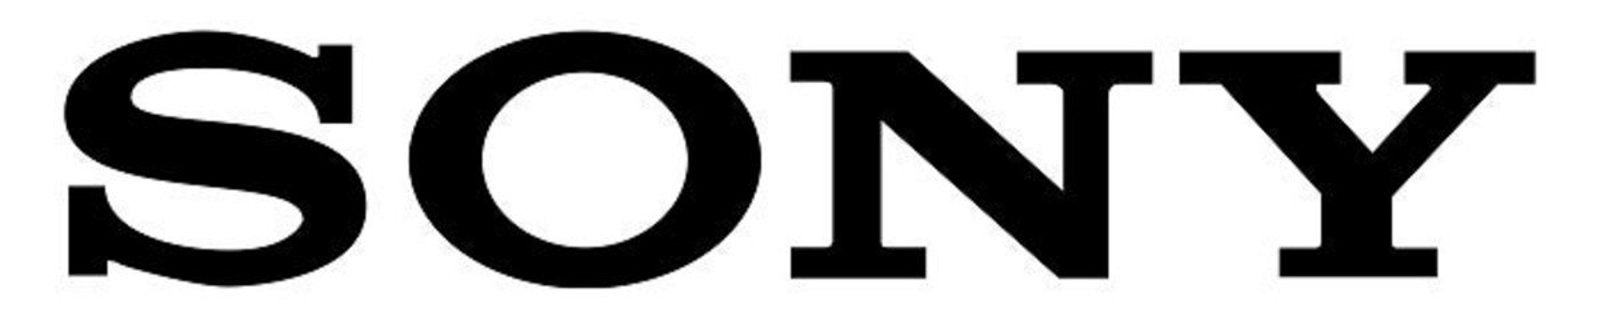 Logo de la firma japonesa Sony